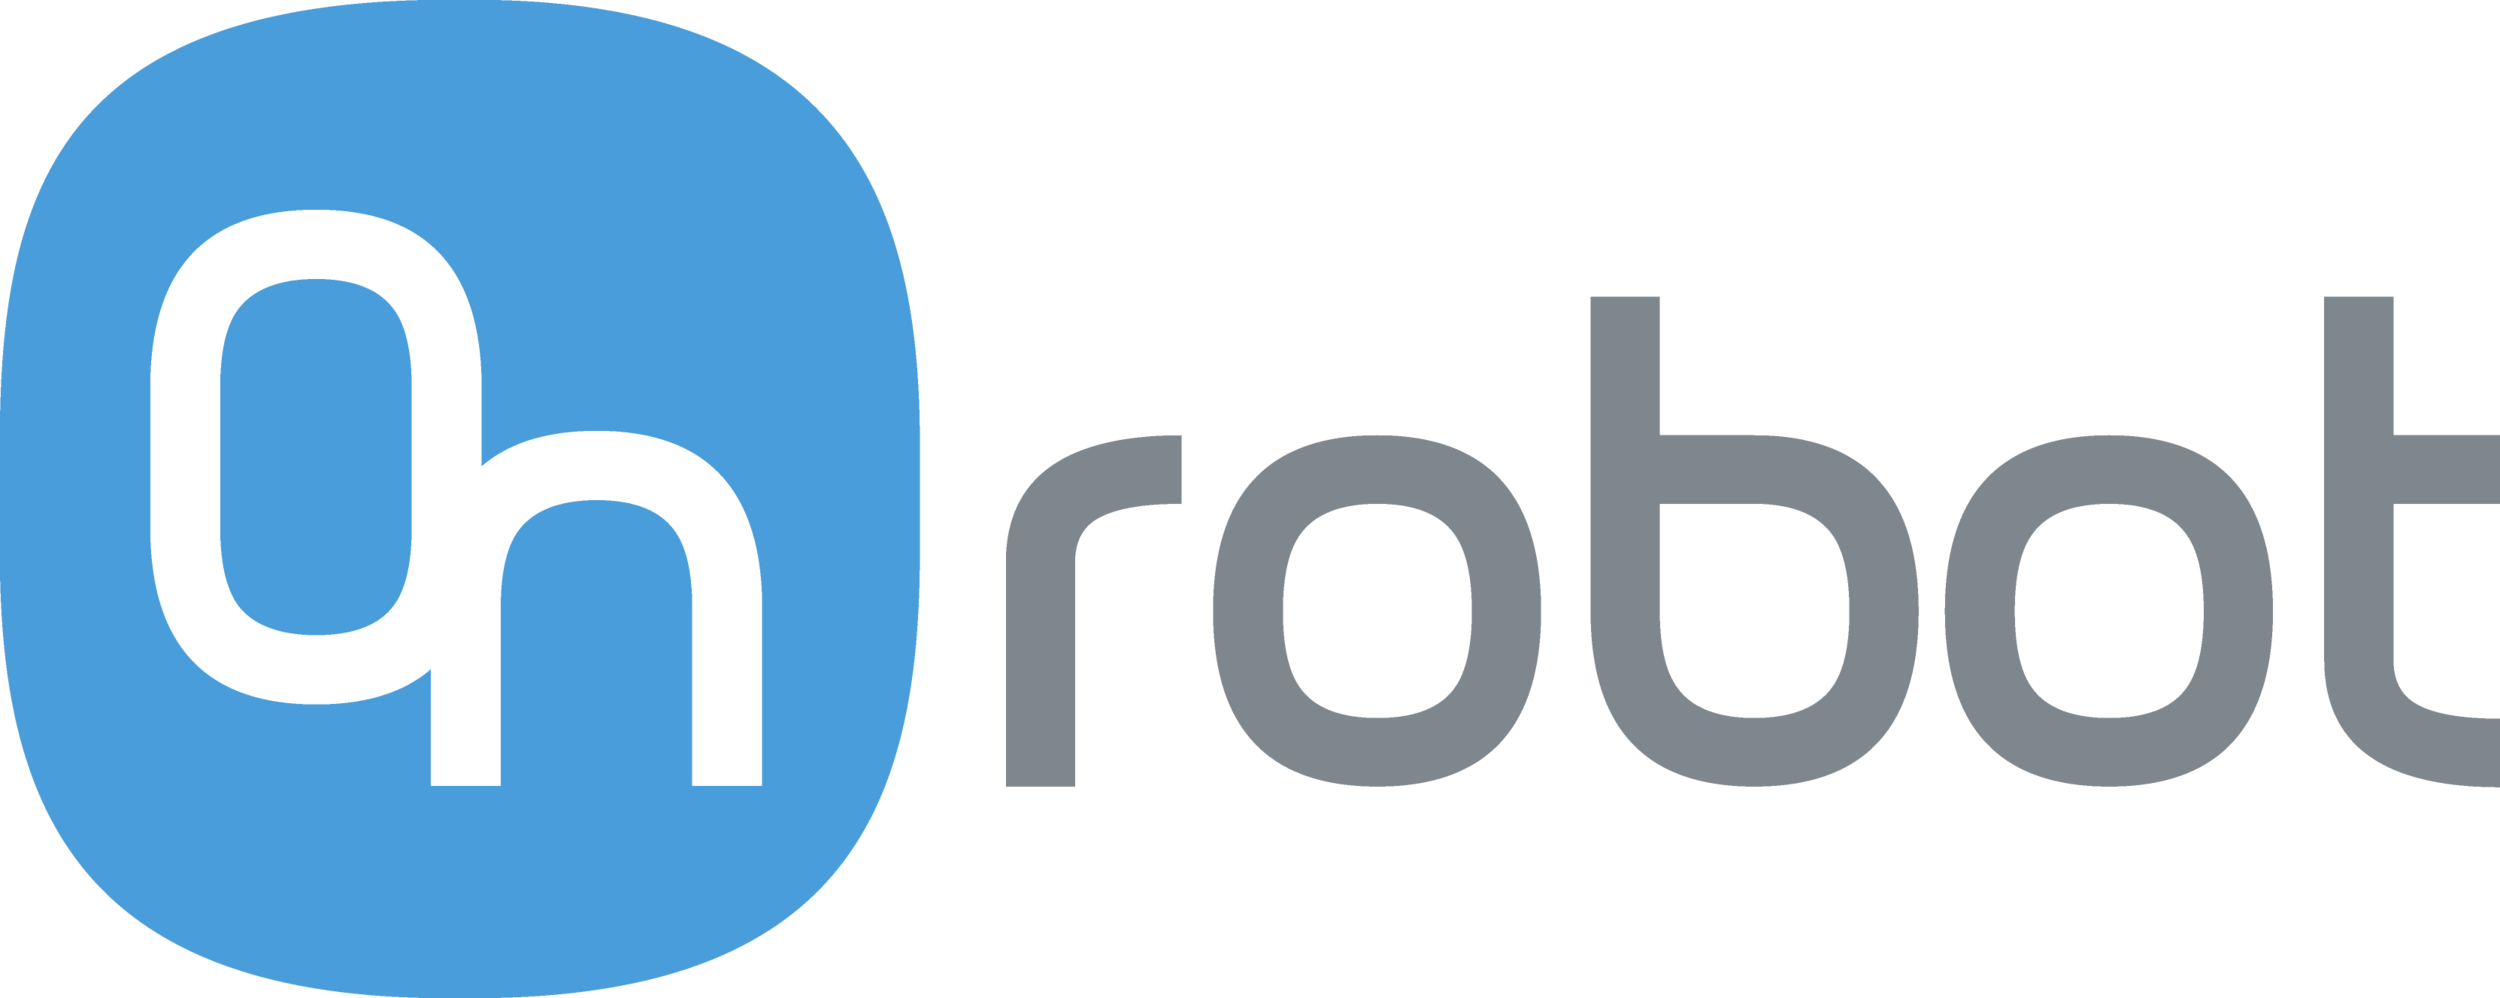 logo_onrobot_rgb.png